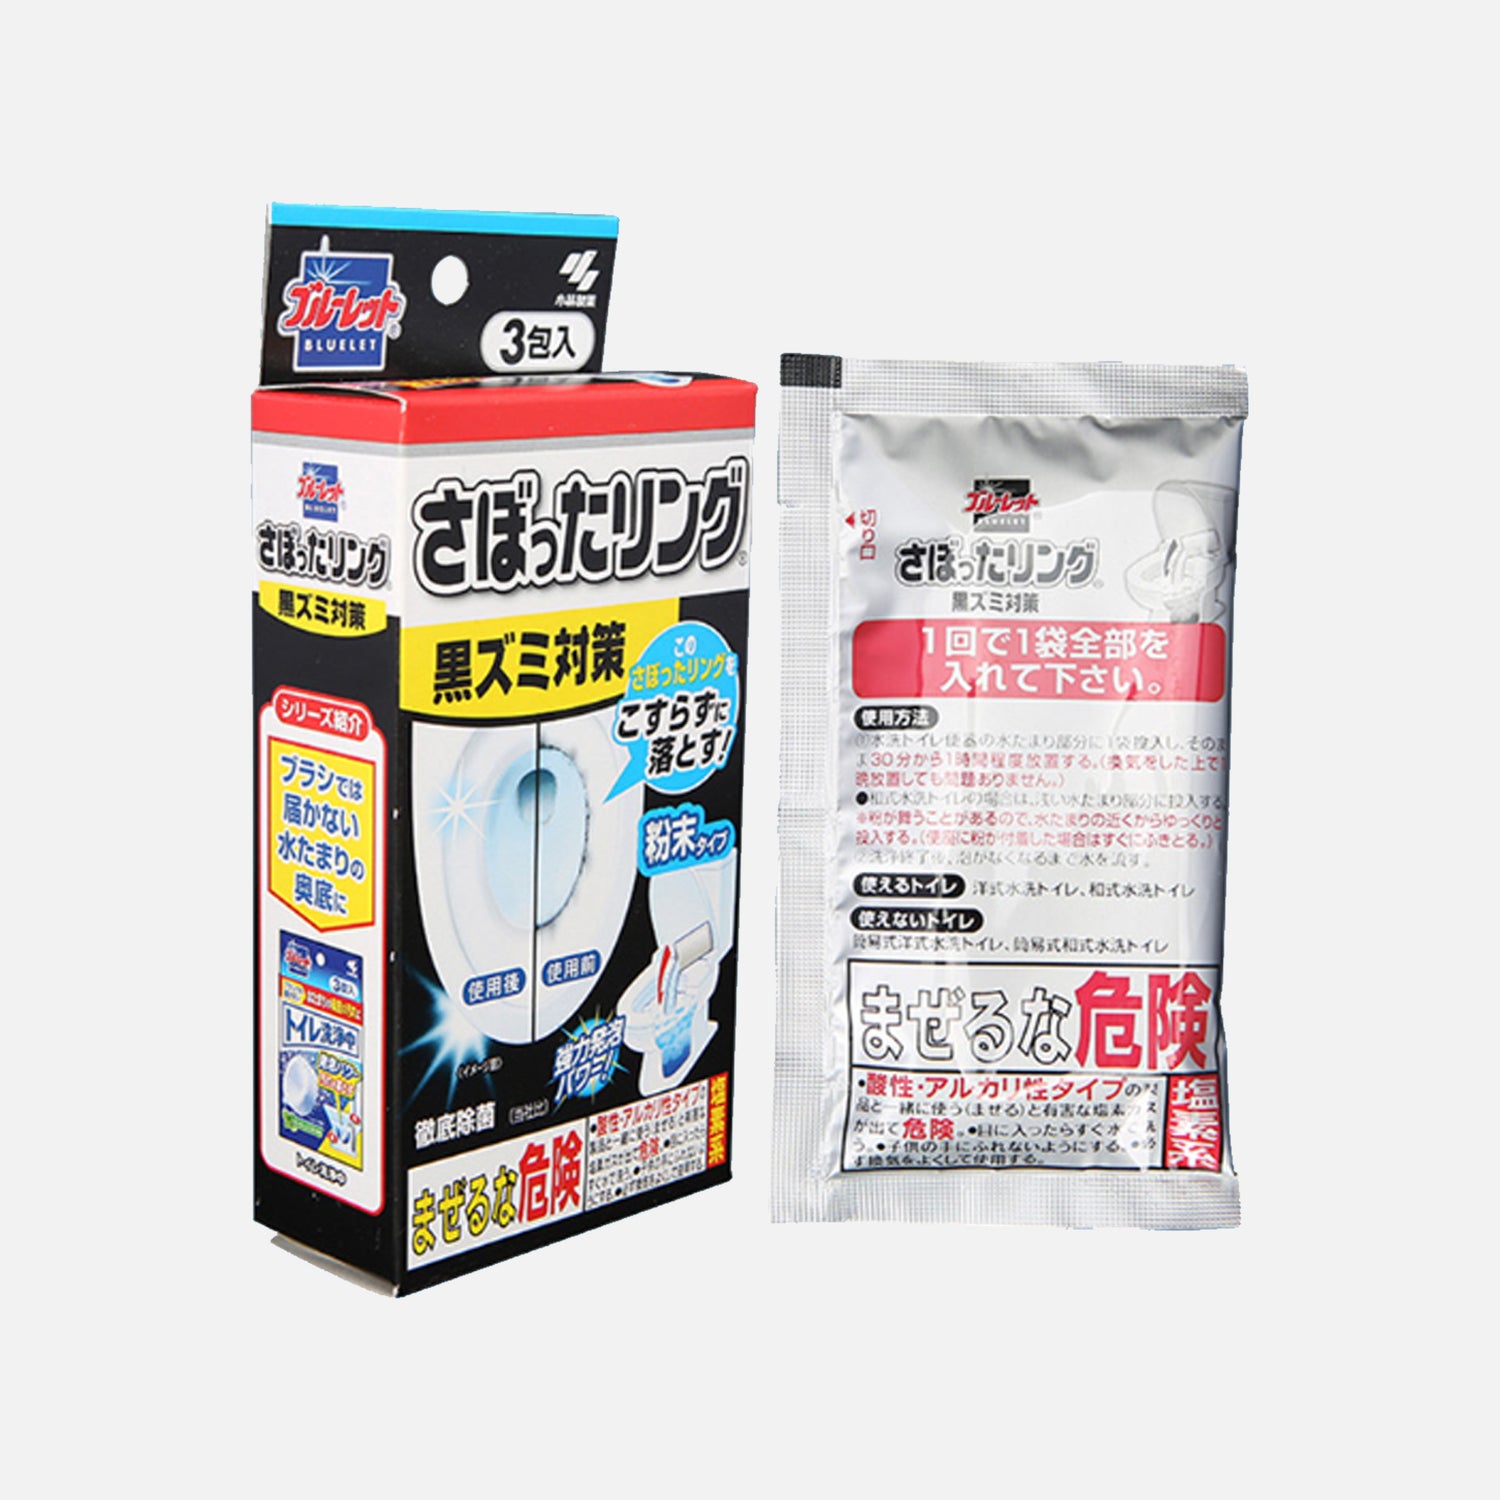 KOBAYASHI Bluelet Flush Toilet Washing Cleaner 5pcs